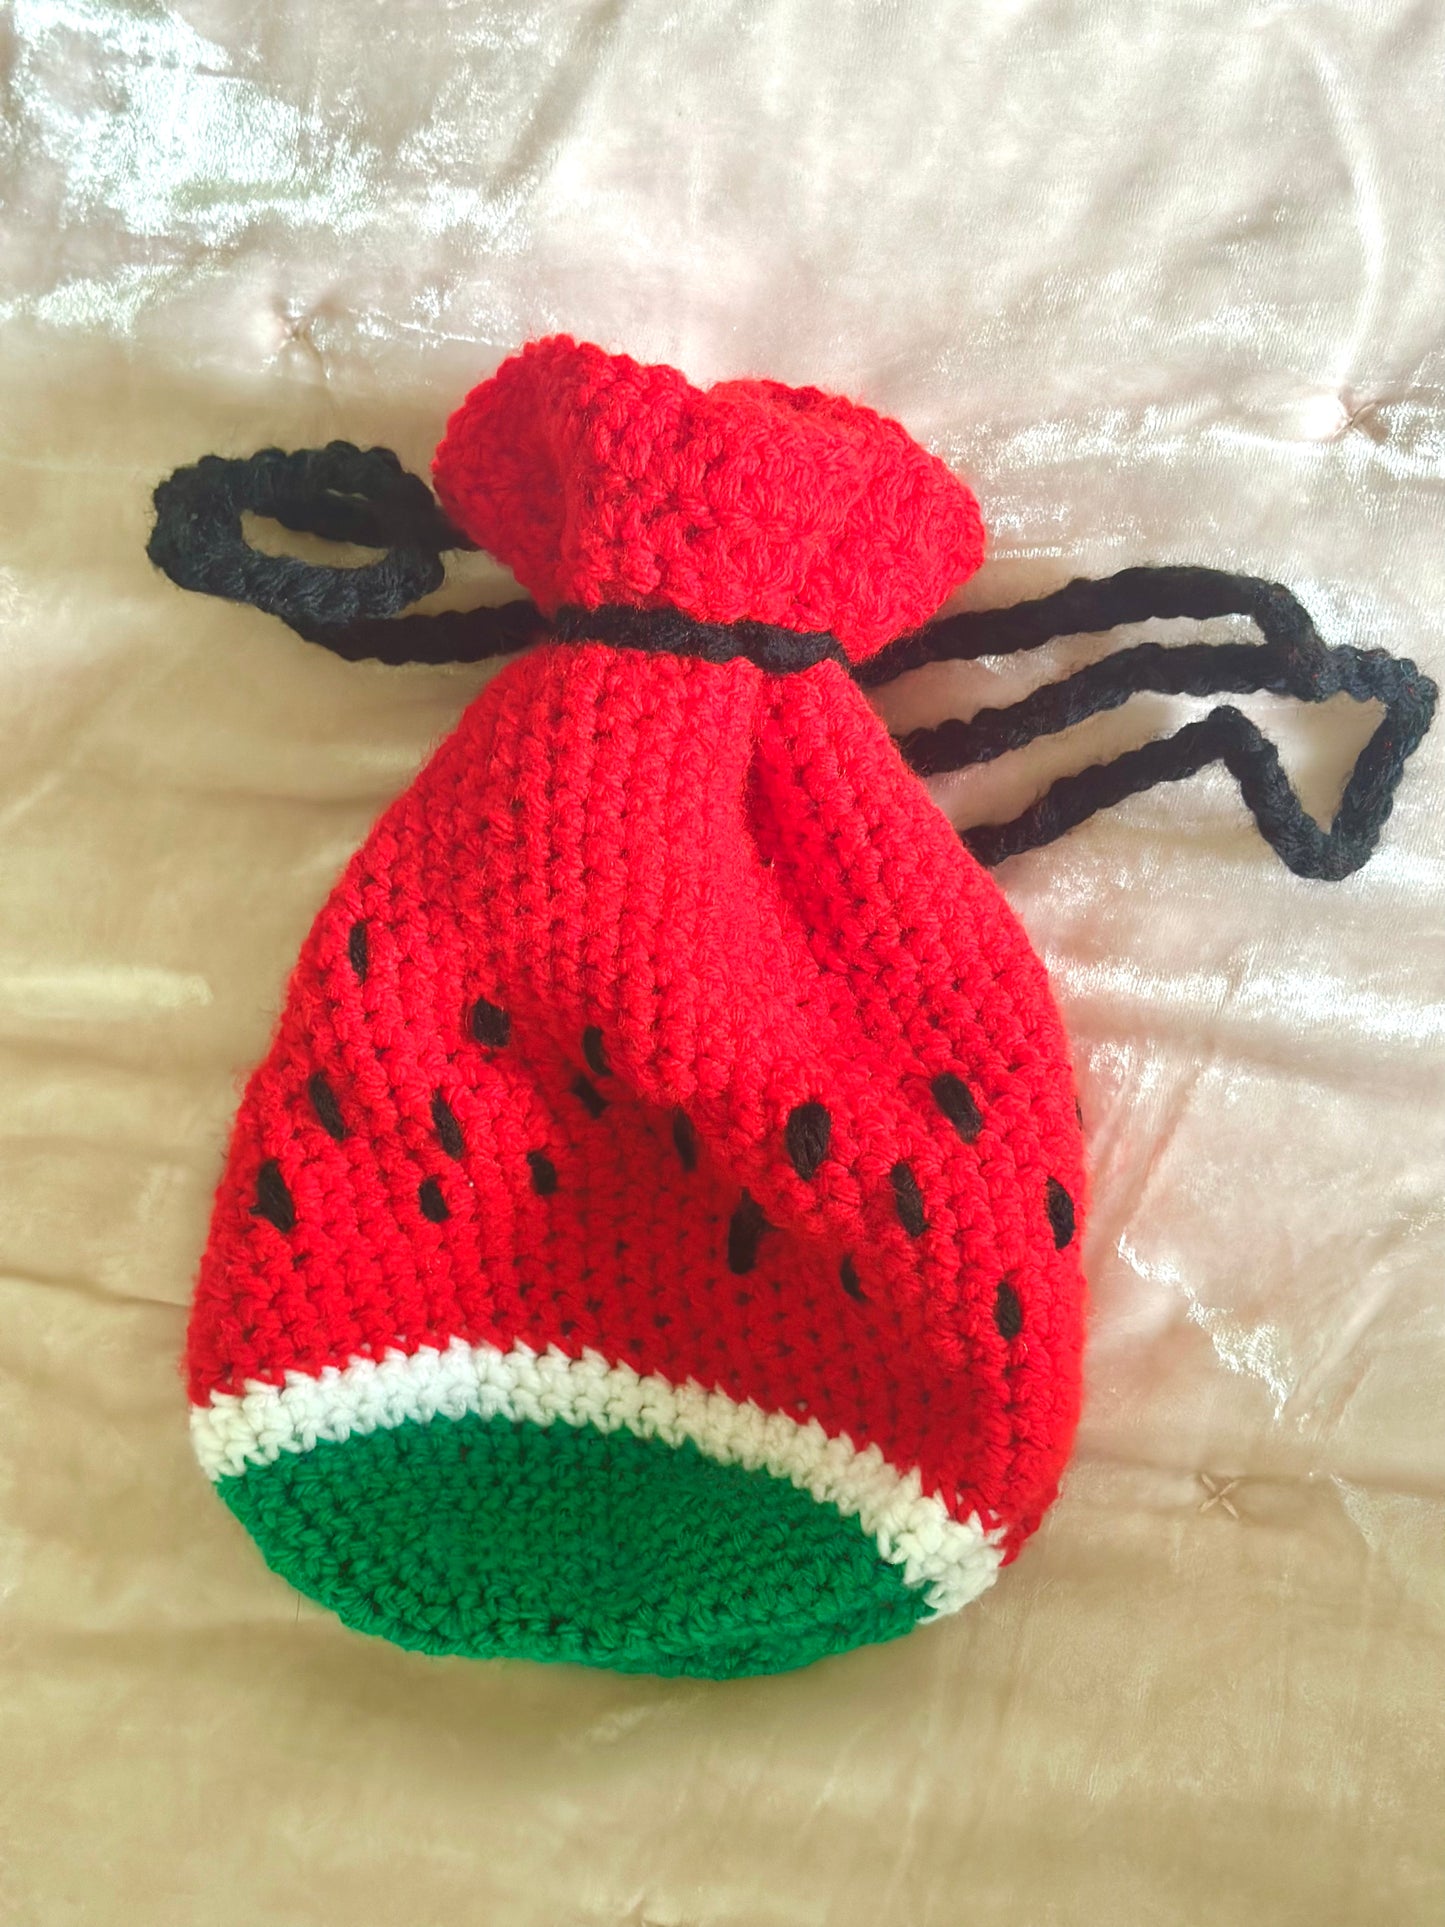 Crochet watermelon pouch